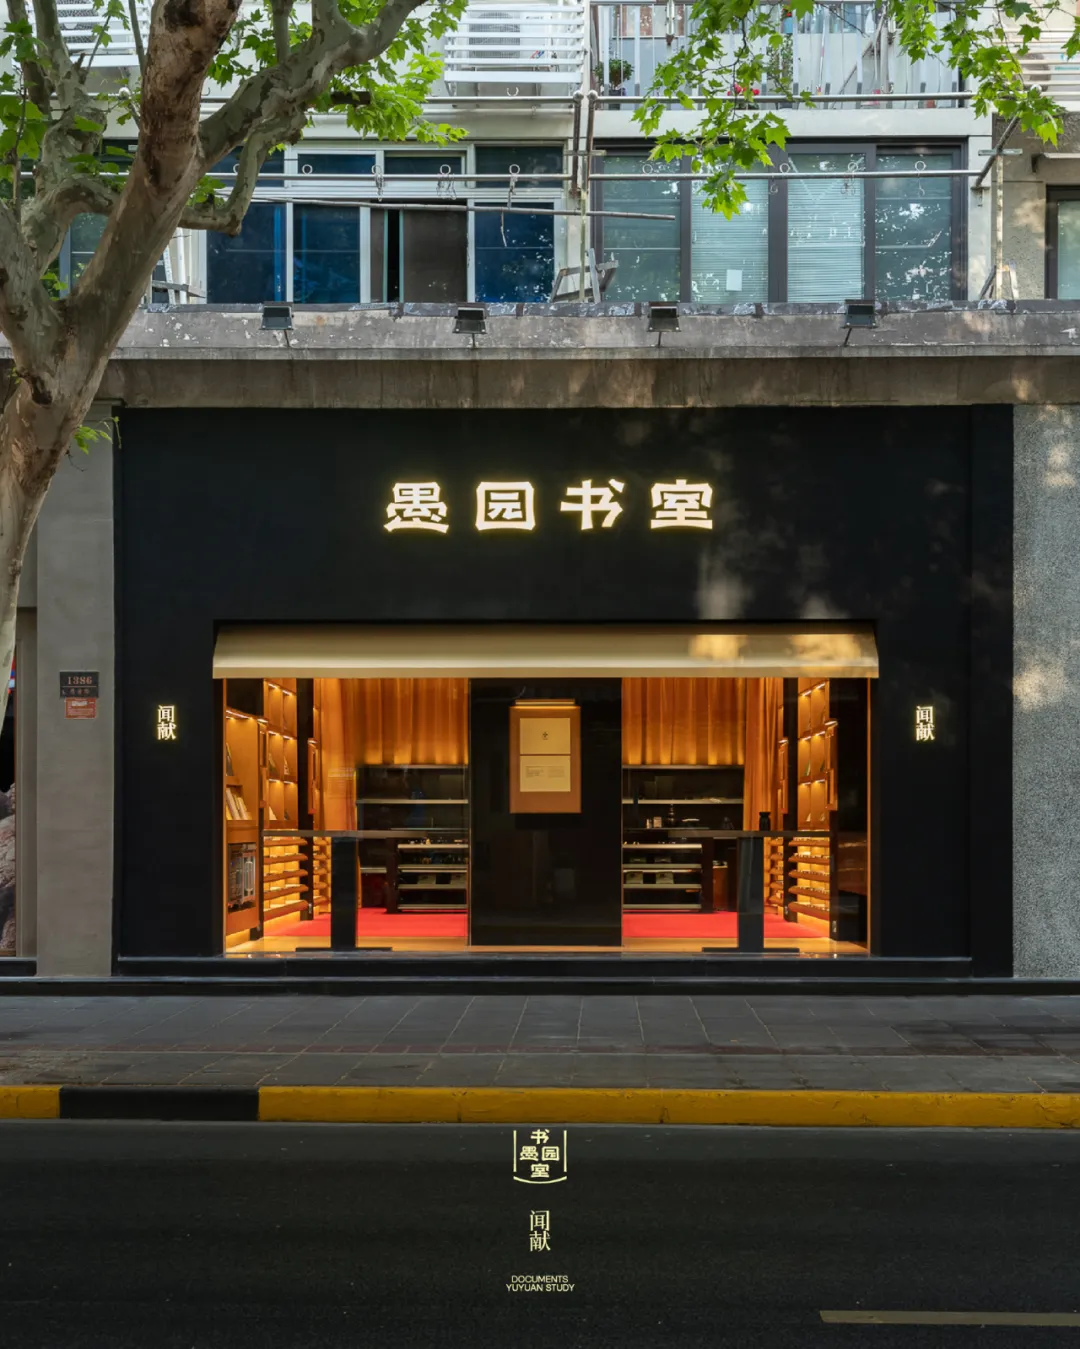 闻献去年在上海愚园路打造了社区书店“愚园书室”。
图片来源：闻献